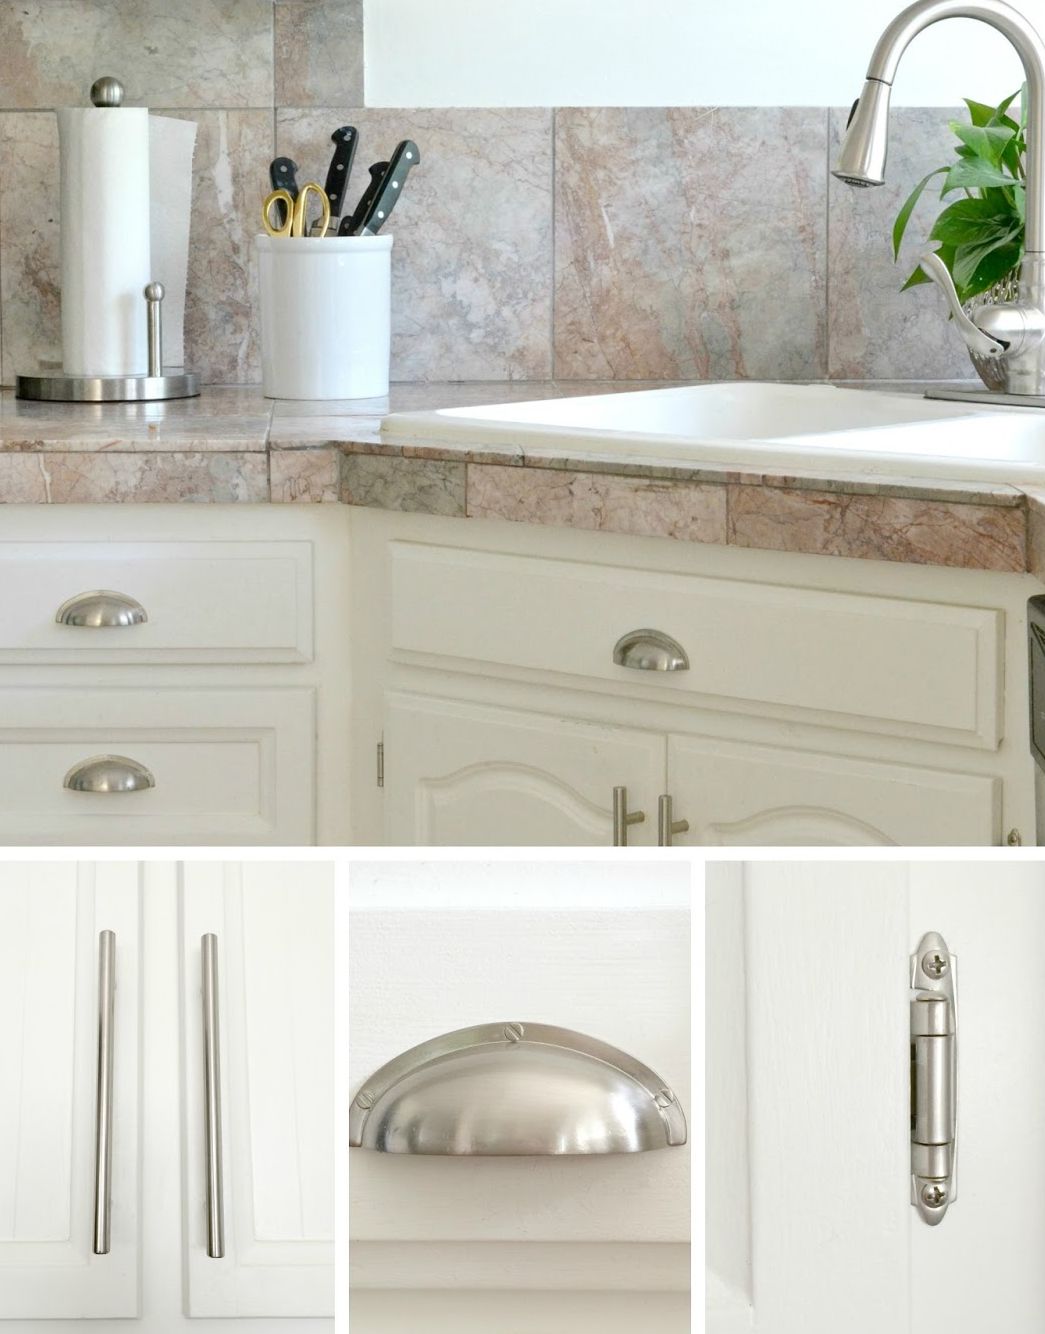 vòi nước và các phụ kiện tủ bếp màu bạc